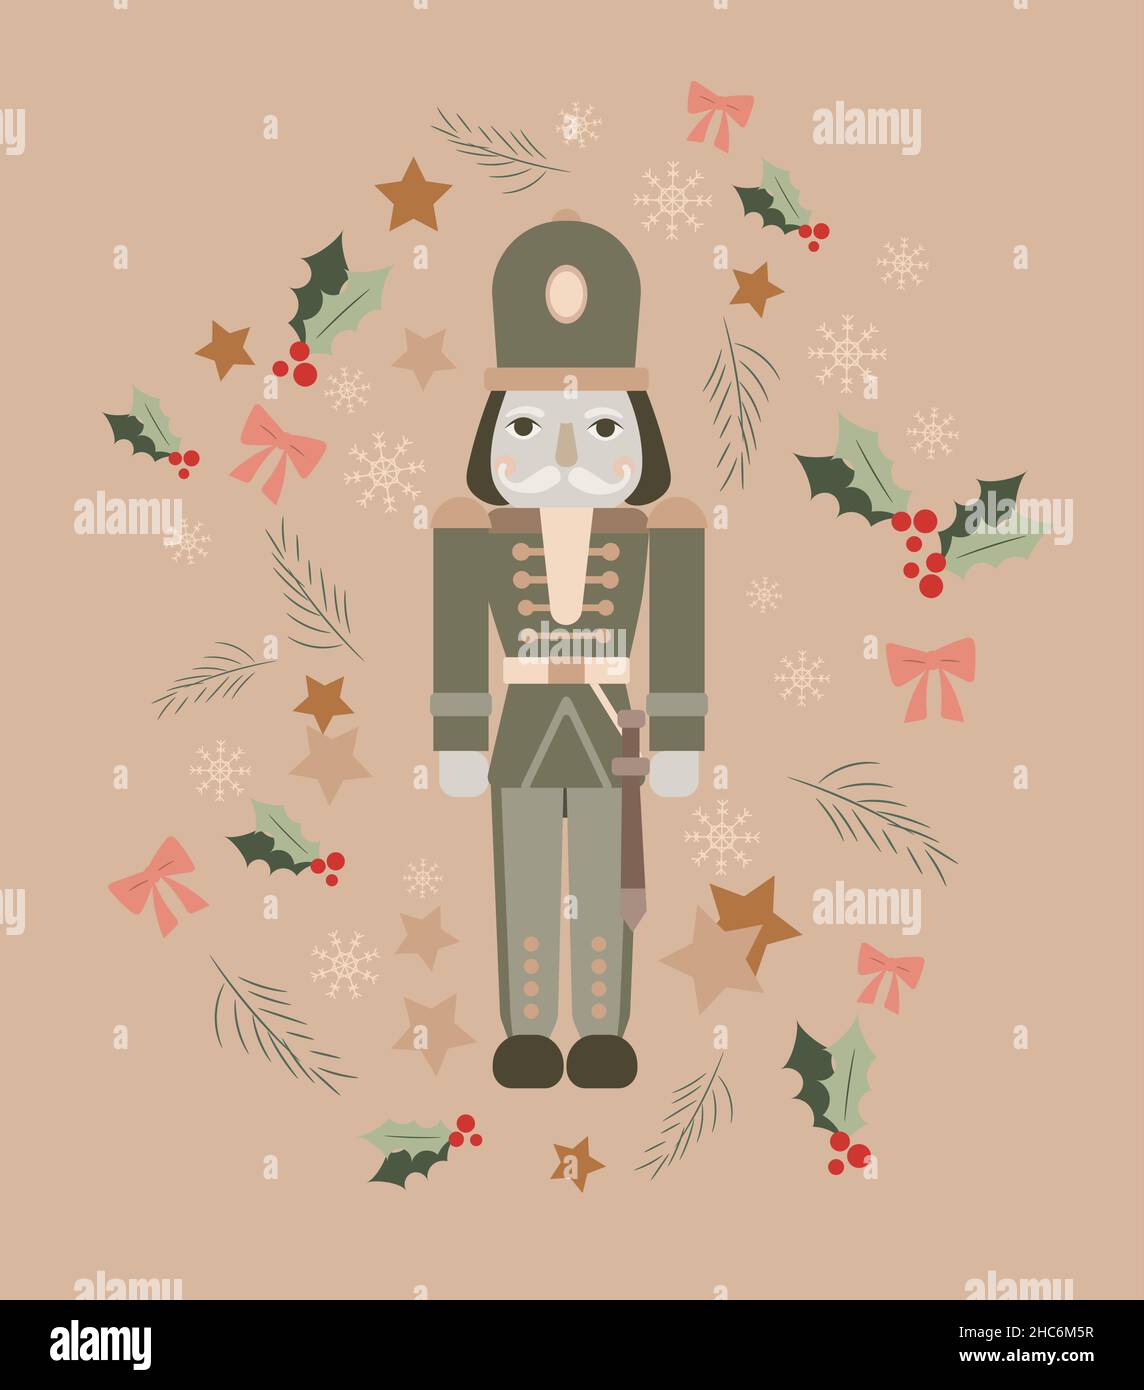 Vektorgrafik Nussknacker. Weihnachtliche Lötmittel. Neujahrsdarstellung eines Soldaten um die festlichen Dekorationen. Bögen, Sterne, Schneeflocken, Mistlet Stock Vektor